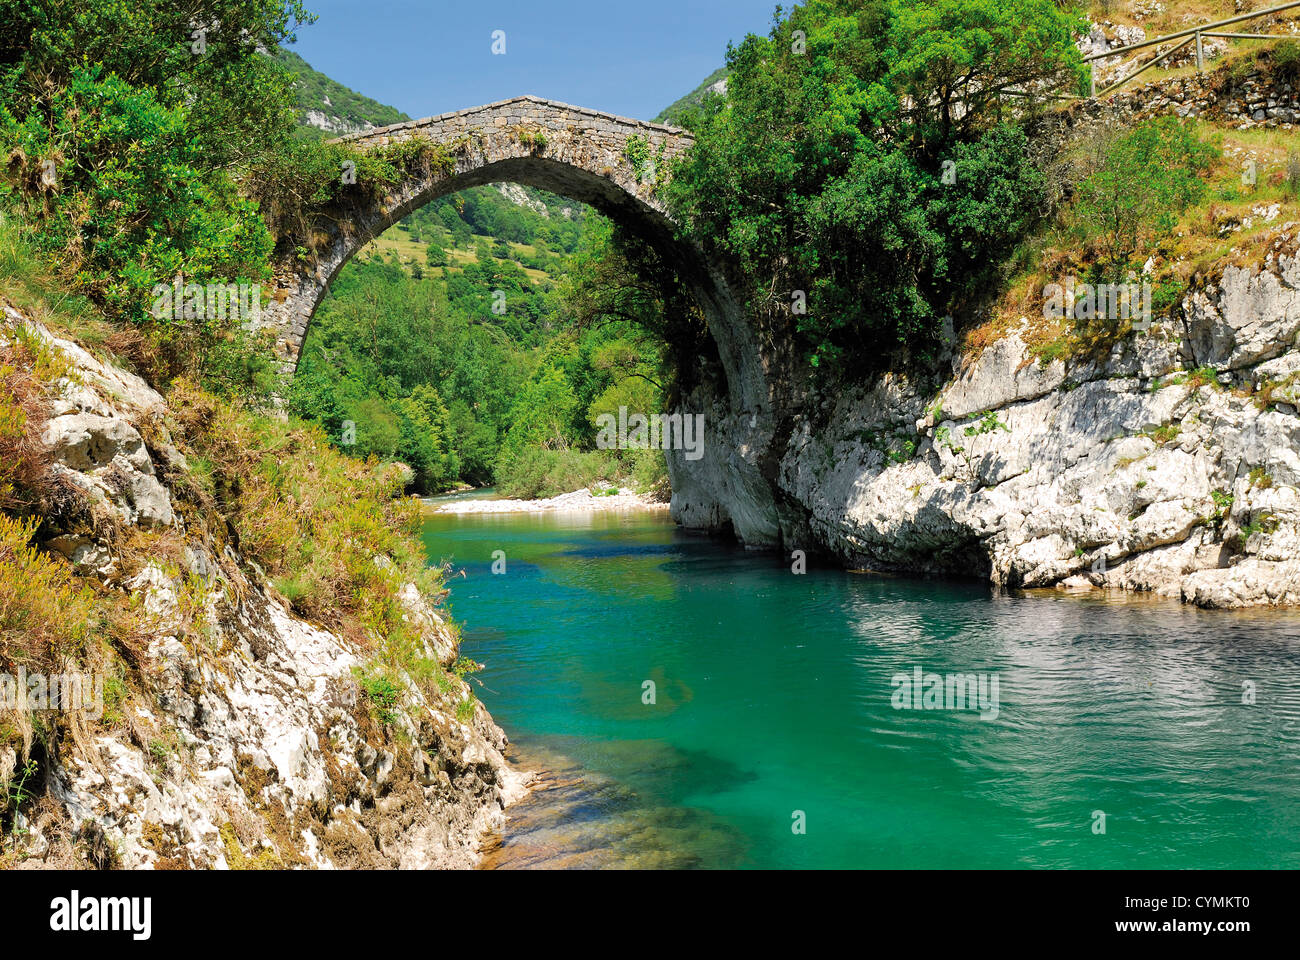 L'Espagne, Asturies : Roman pont de pierre sur la rivière de montagne s'occupe dans le Parc National Picos de Europa Banque D'Images